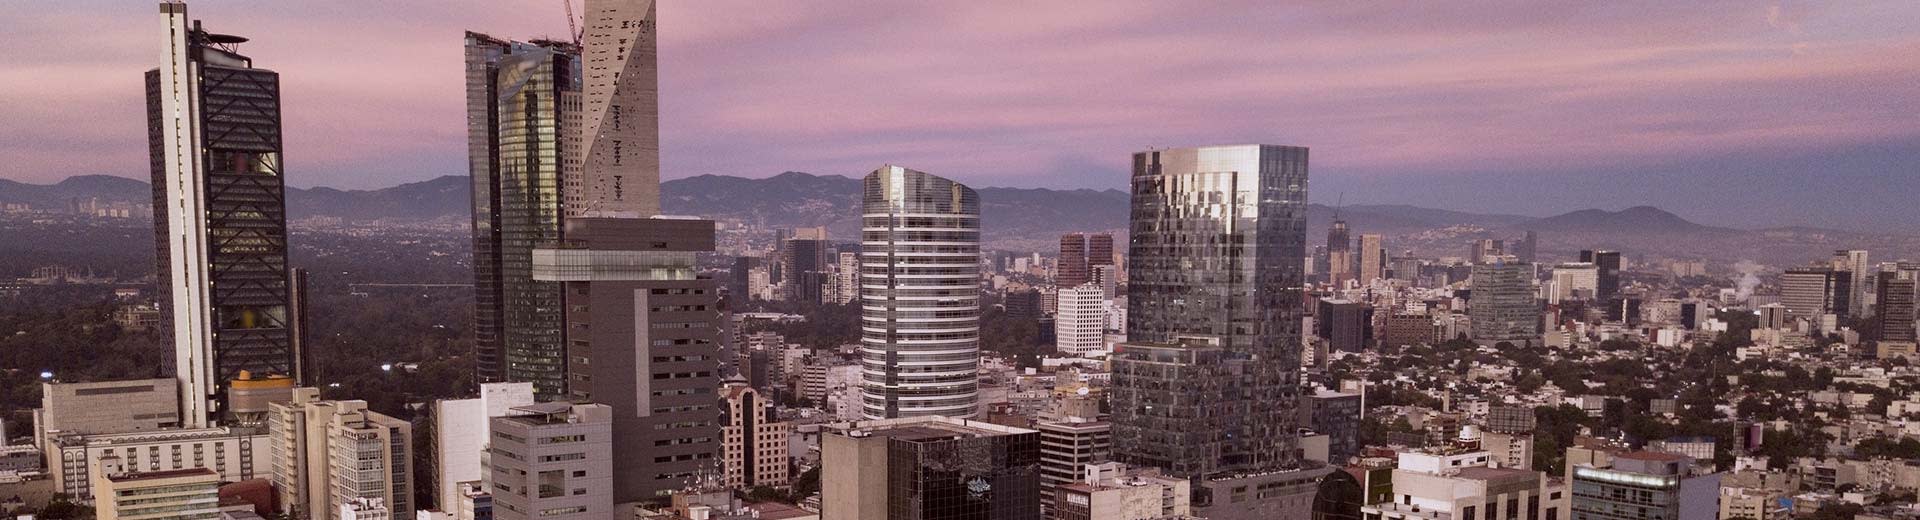 Los rascacielos en primer plano mientras la Ciudad de México se extiende detrás de ellos, con la luz morada del anochecer o el amanecer en el fondo.